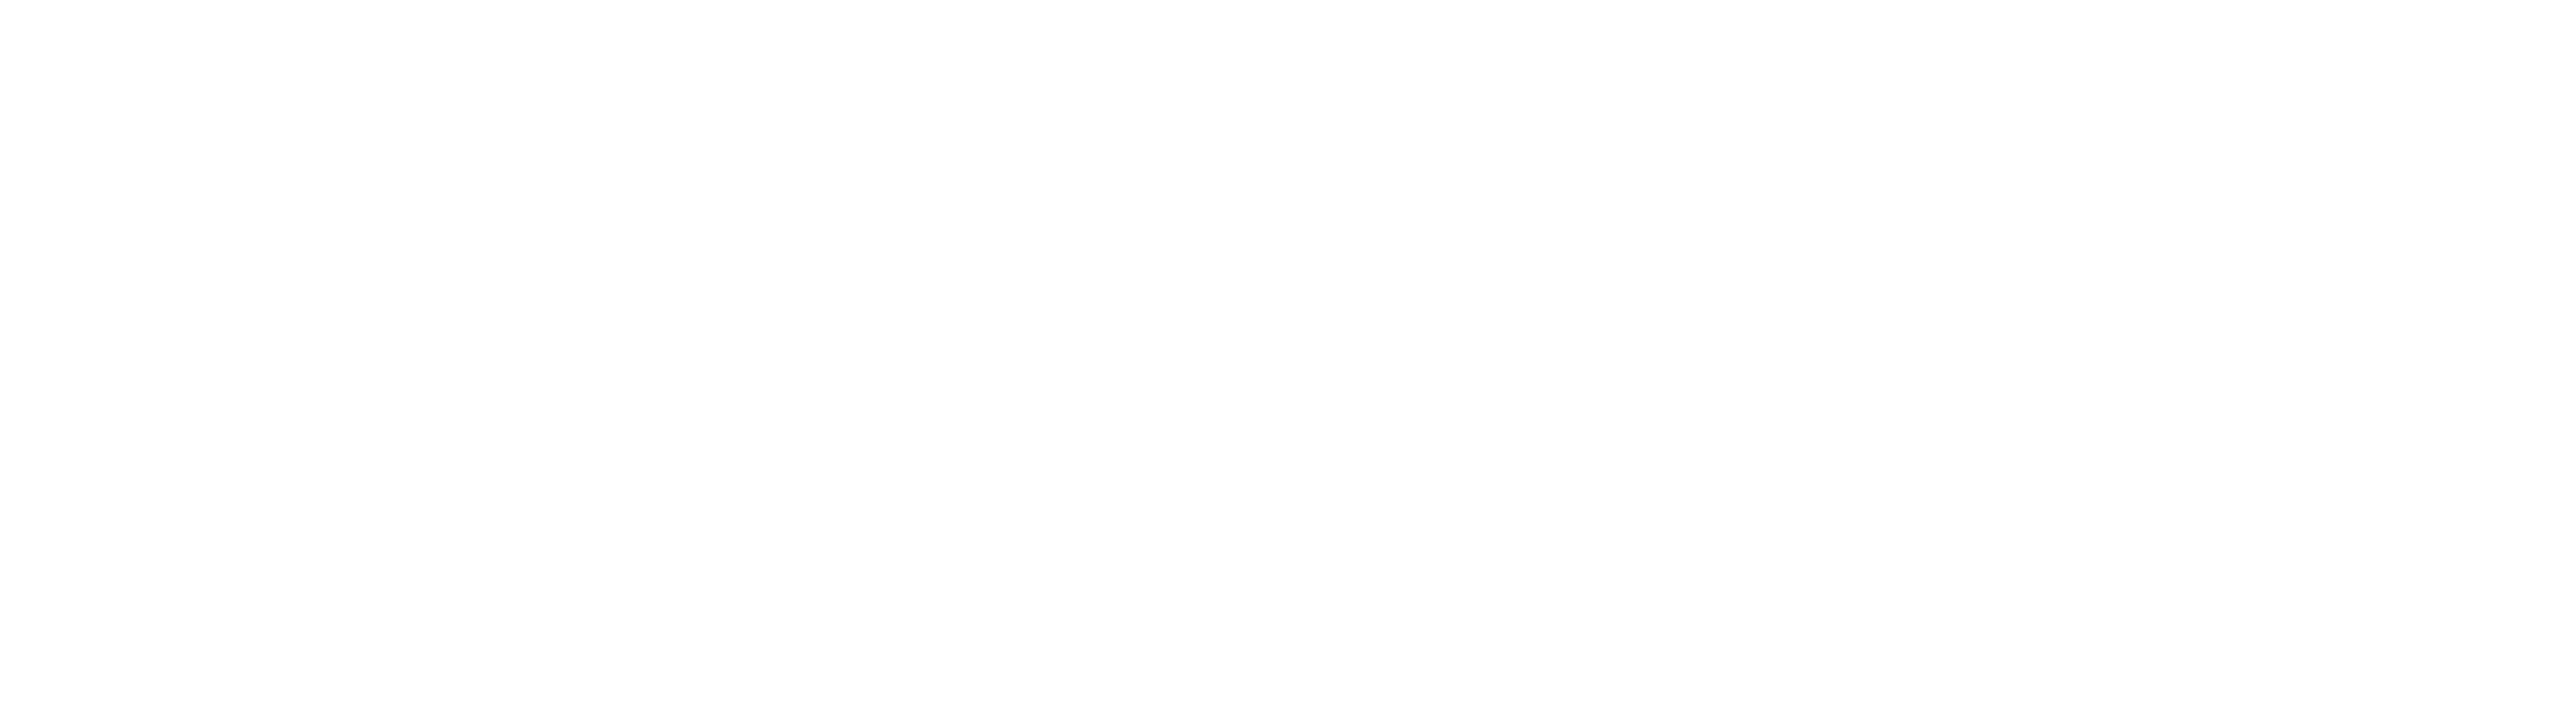 NetValue Hosting Support